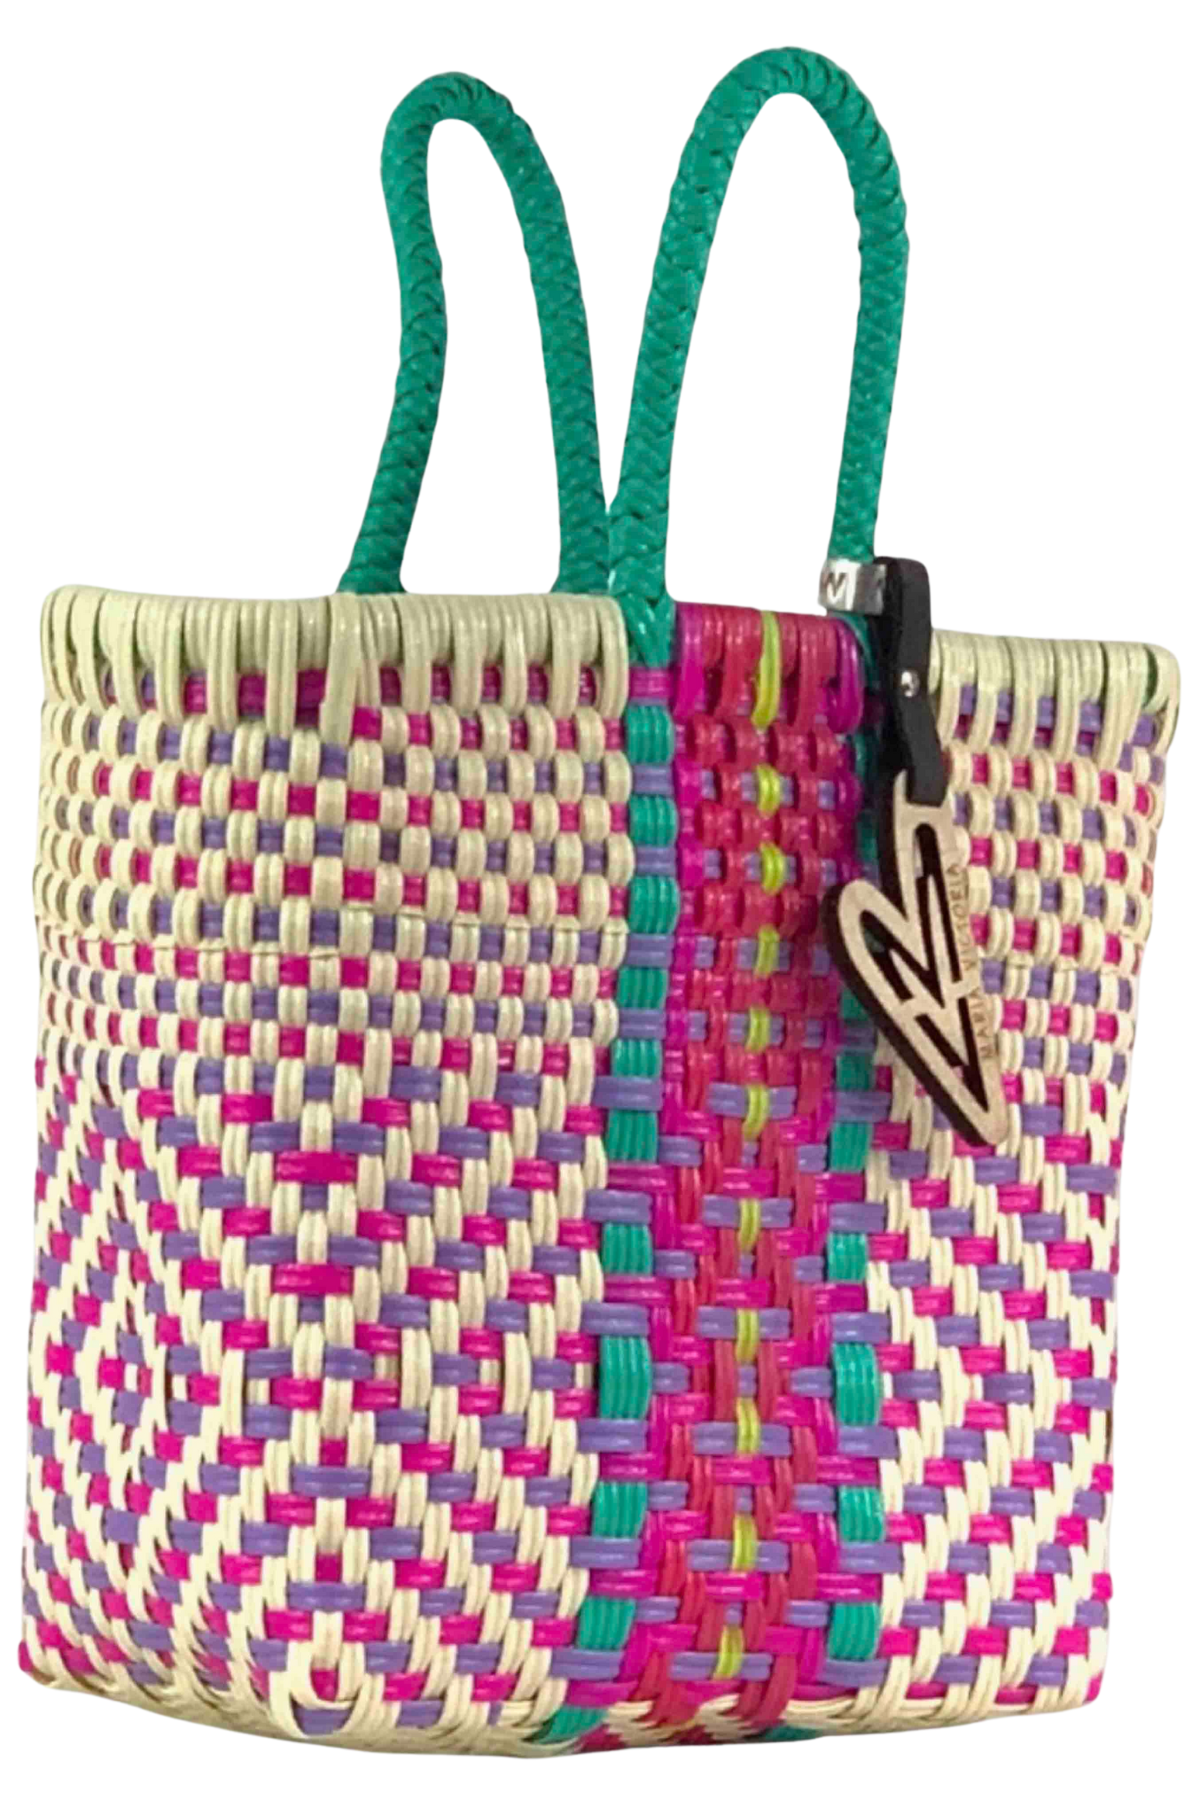 Pink and green multi colored Mini ATEMI 34 Tote Bag by Maria Victoria